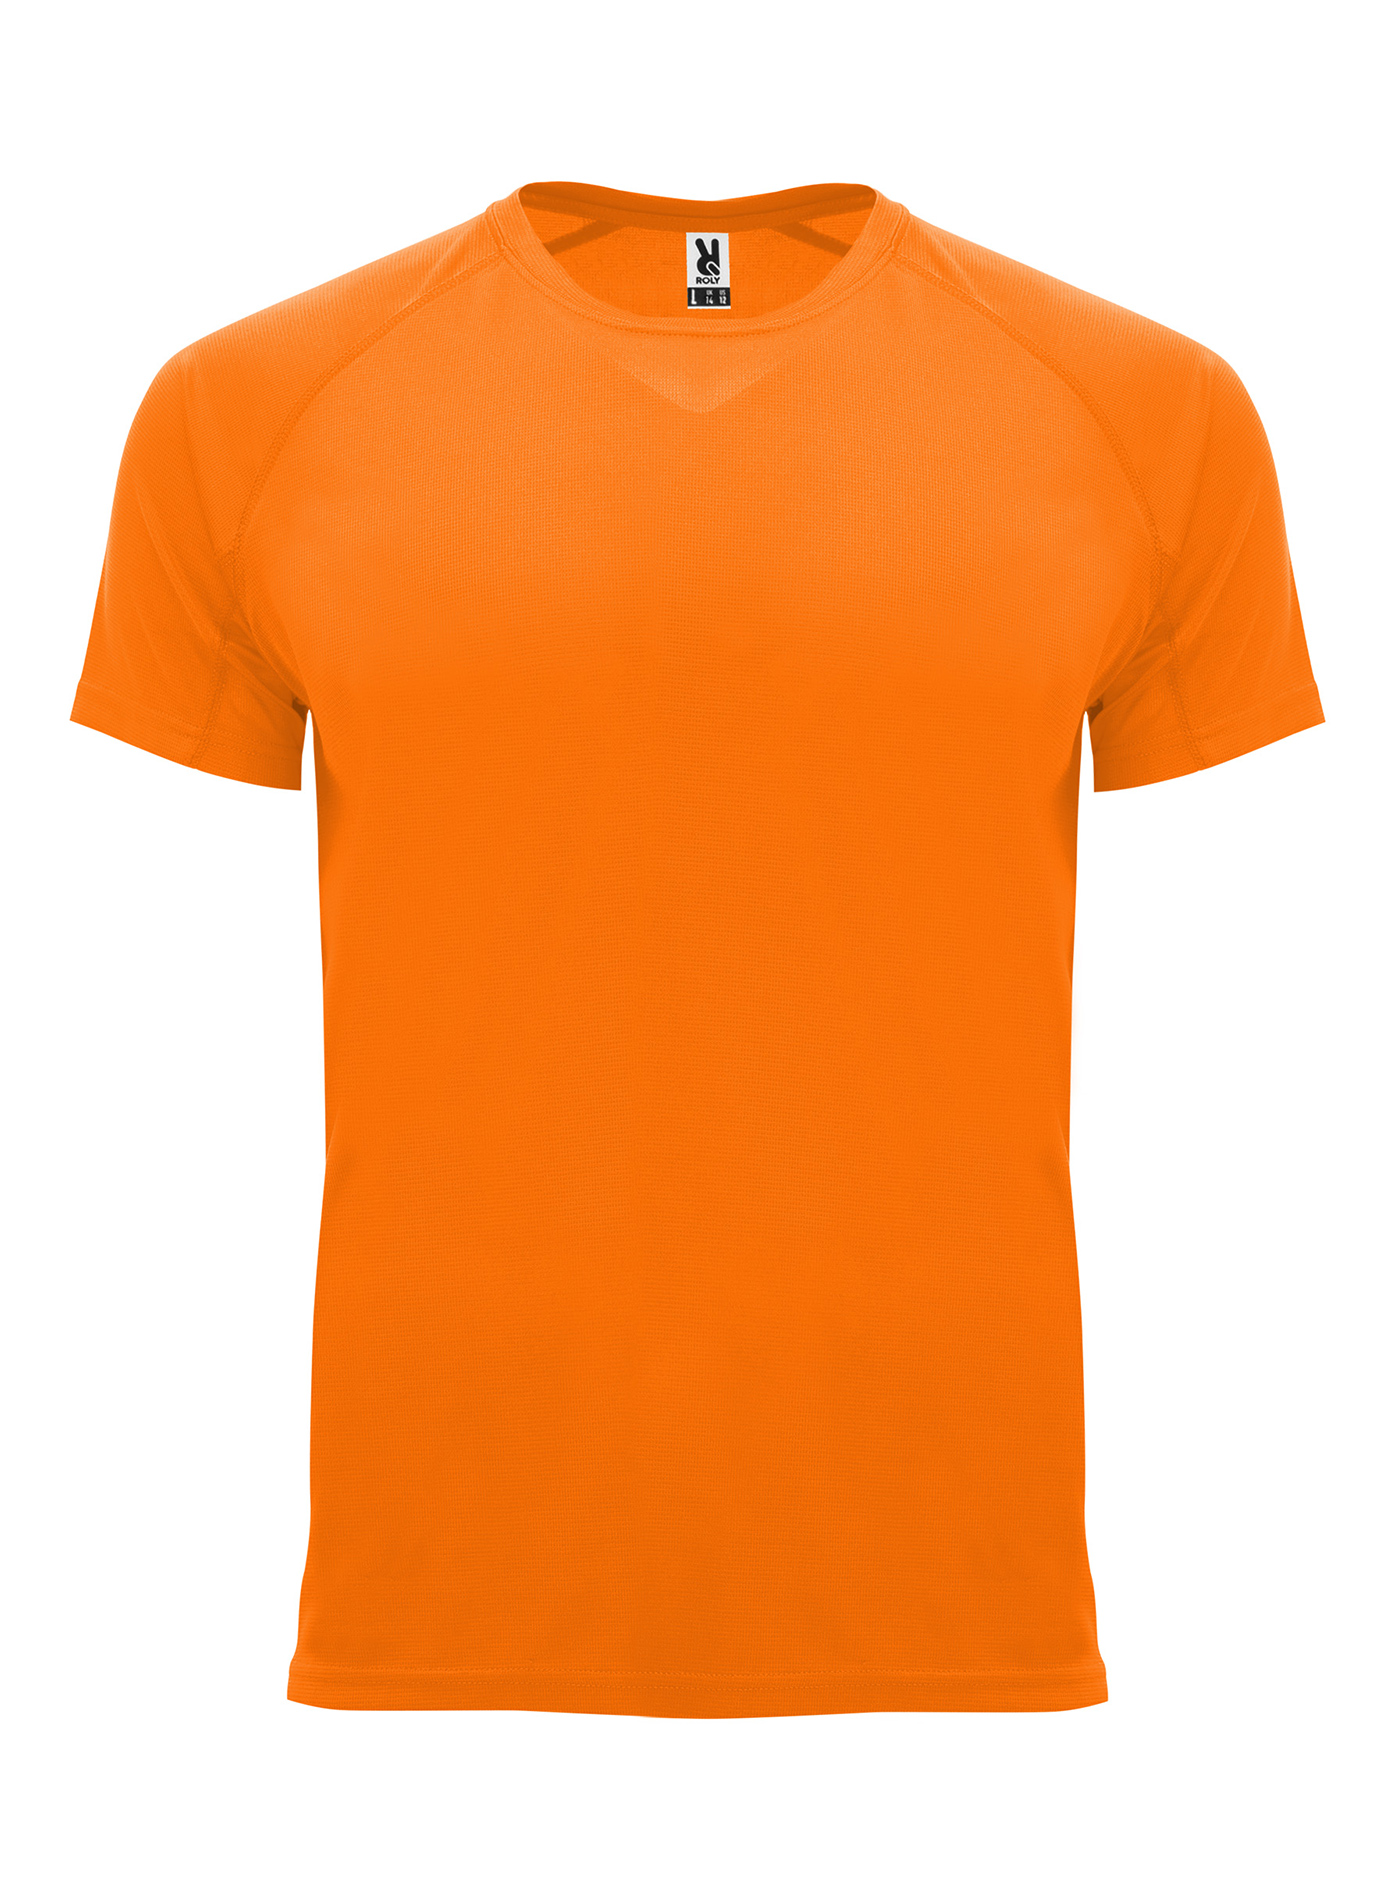 Pánské sportovní tričko Roly Bahrain - Neonová oranžová L